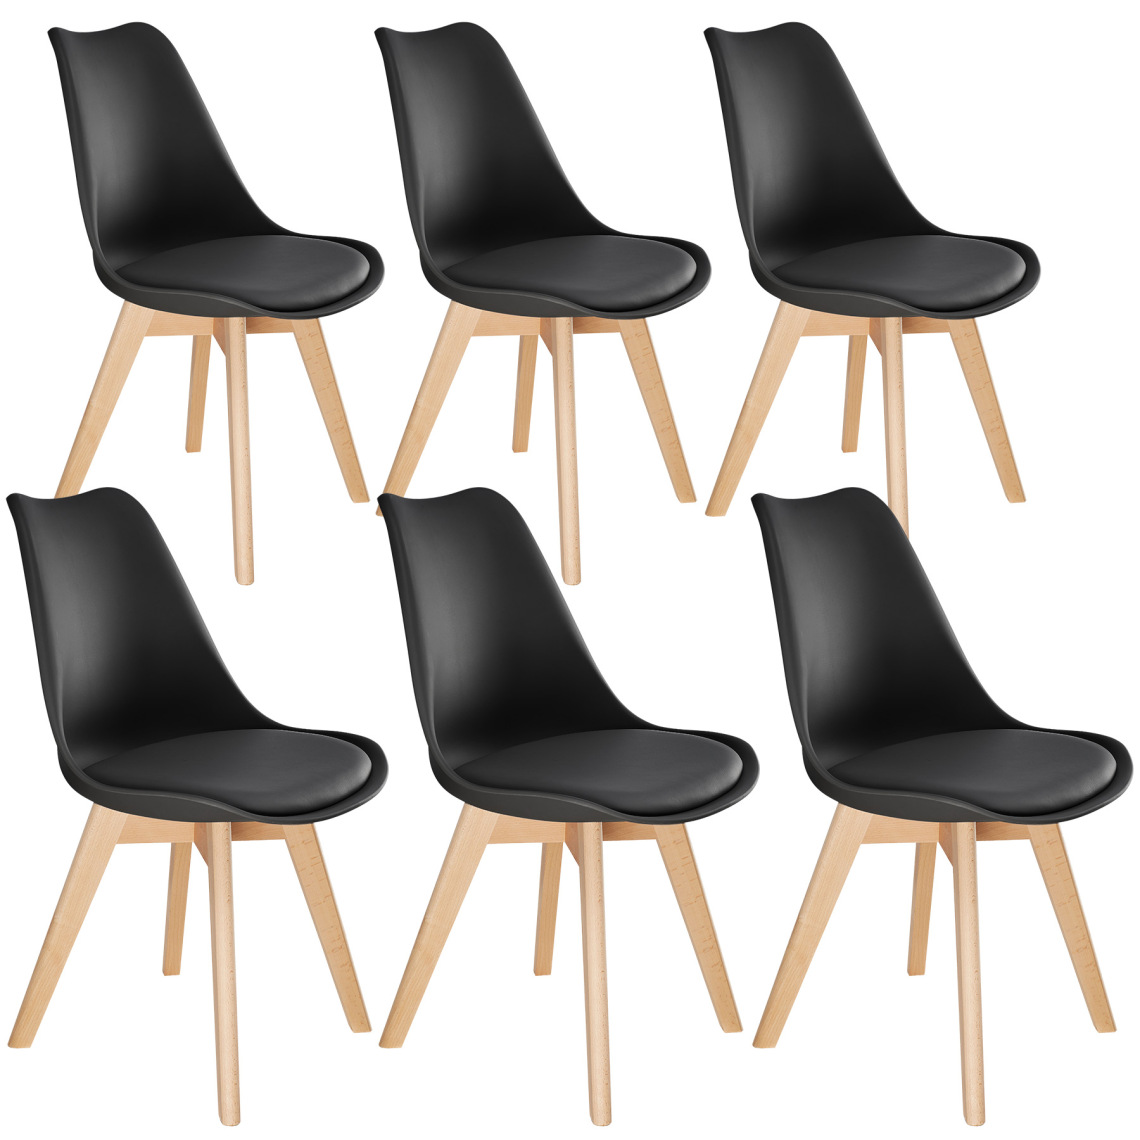 Tectake - 6 Chaises de Salle à Manger FRÉDÉRIQUE Style Scandinave Pieds en Bois Massif Design Moderne - noir - Chaises